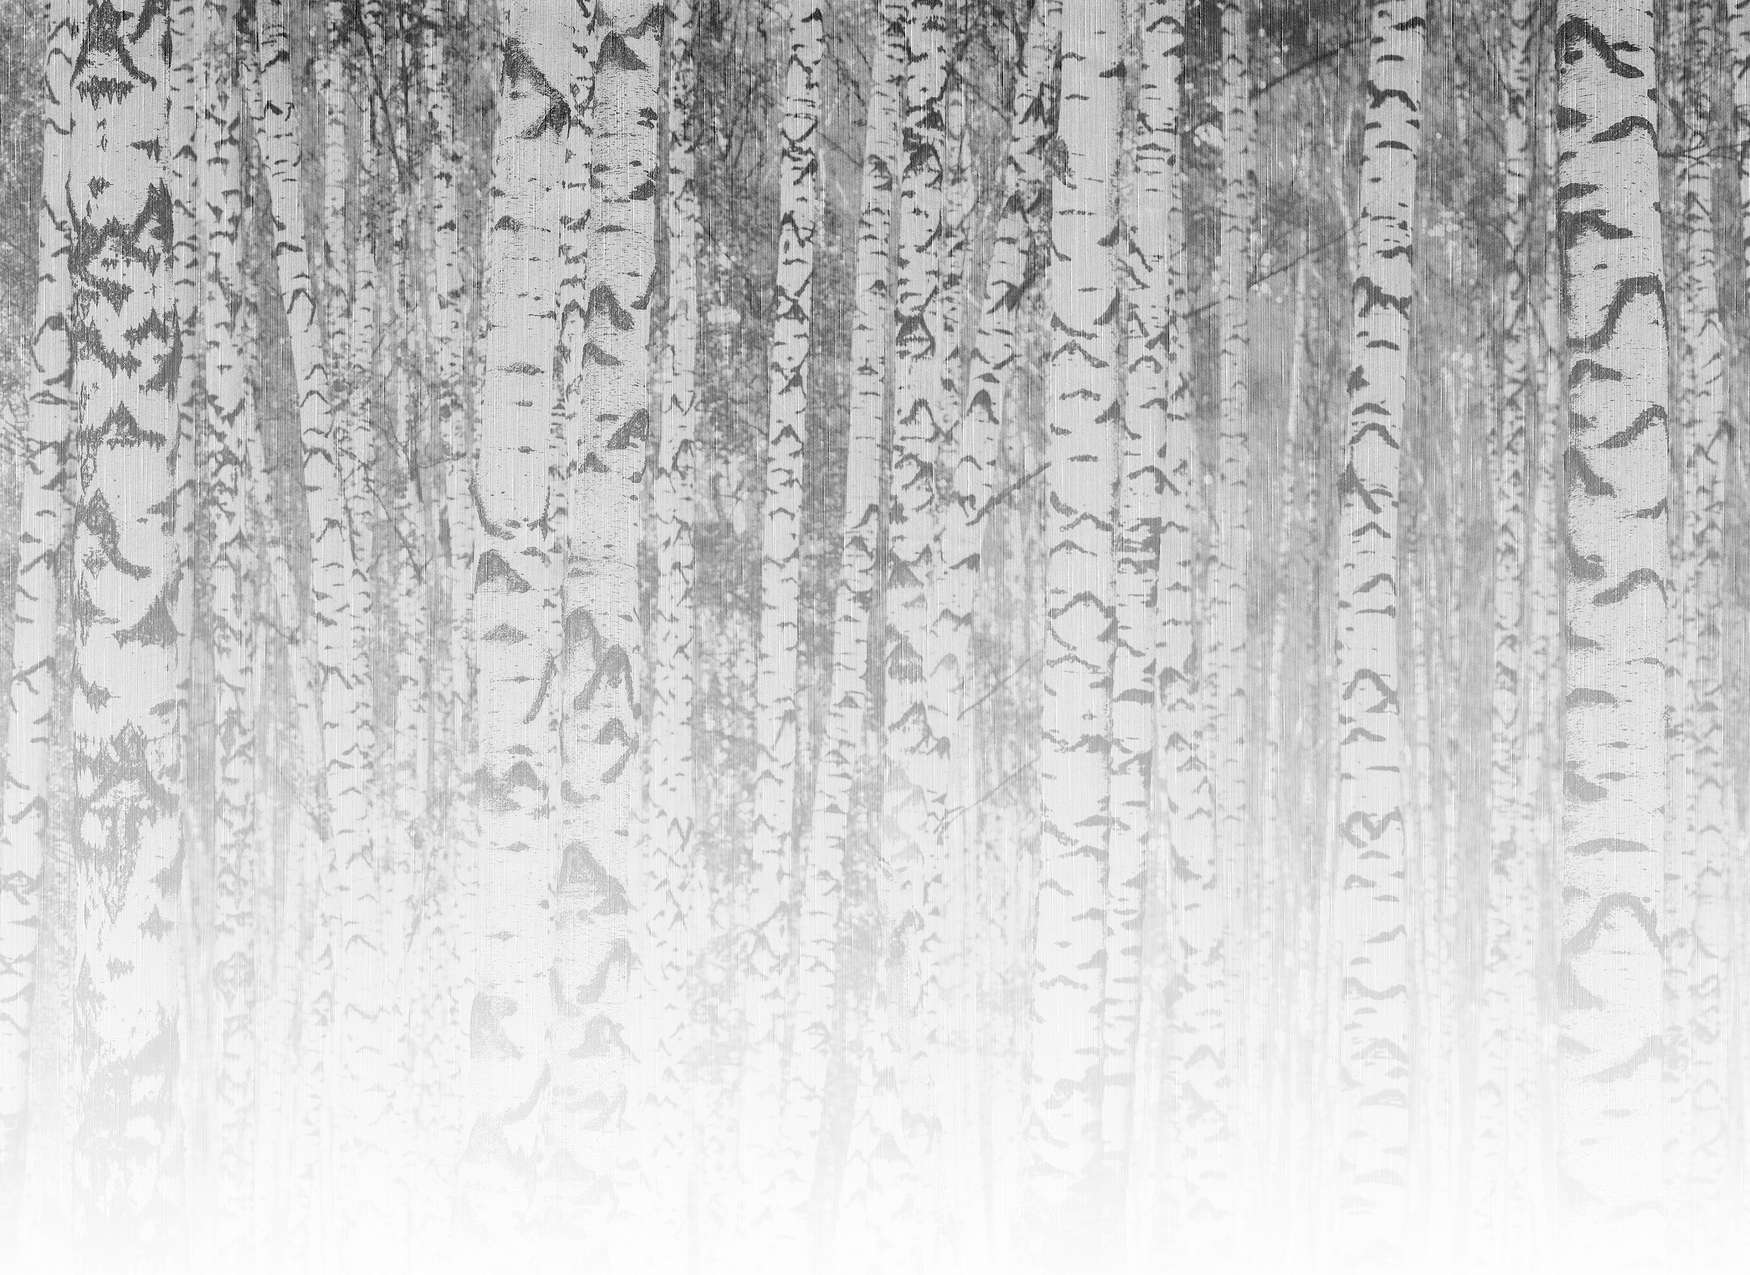             Fotomural troncos de abedul claros en un bosque brumoso - blanco y negro
        